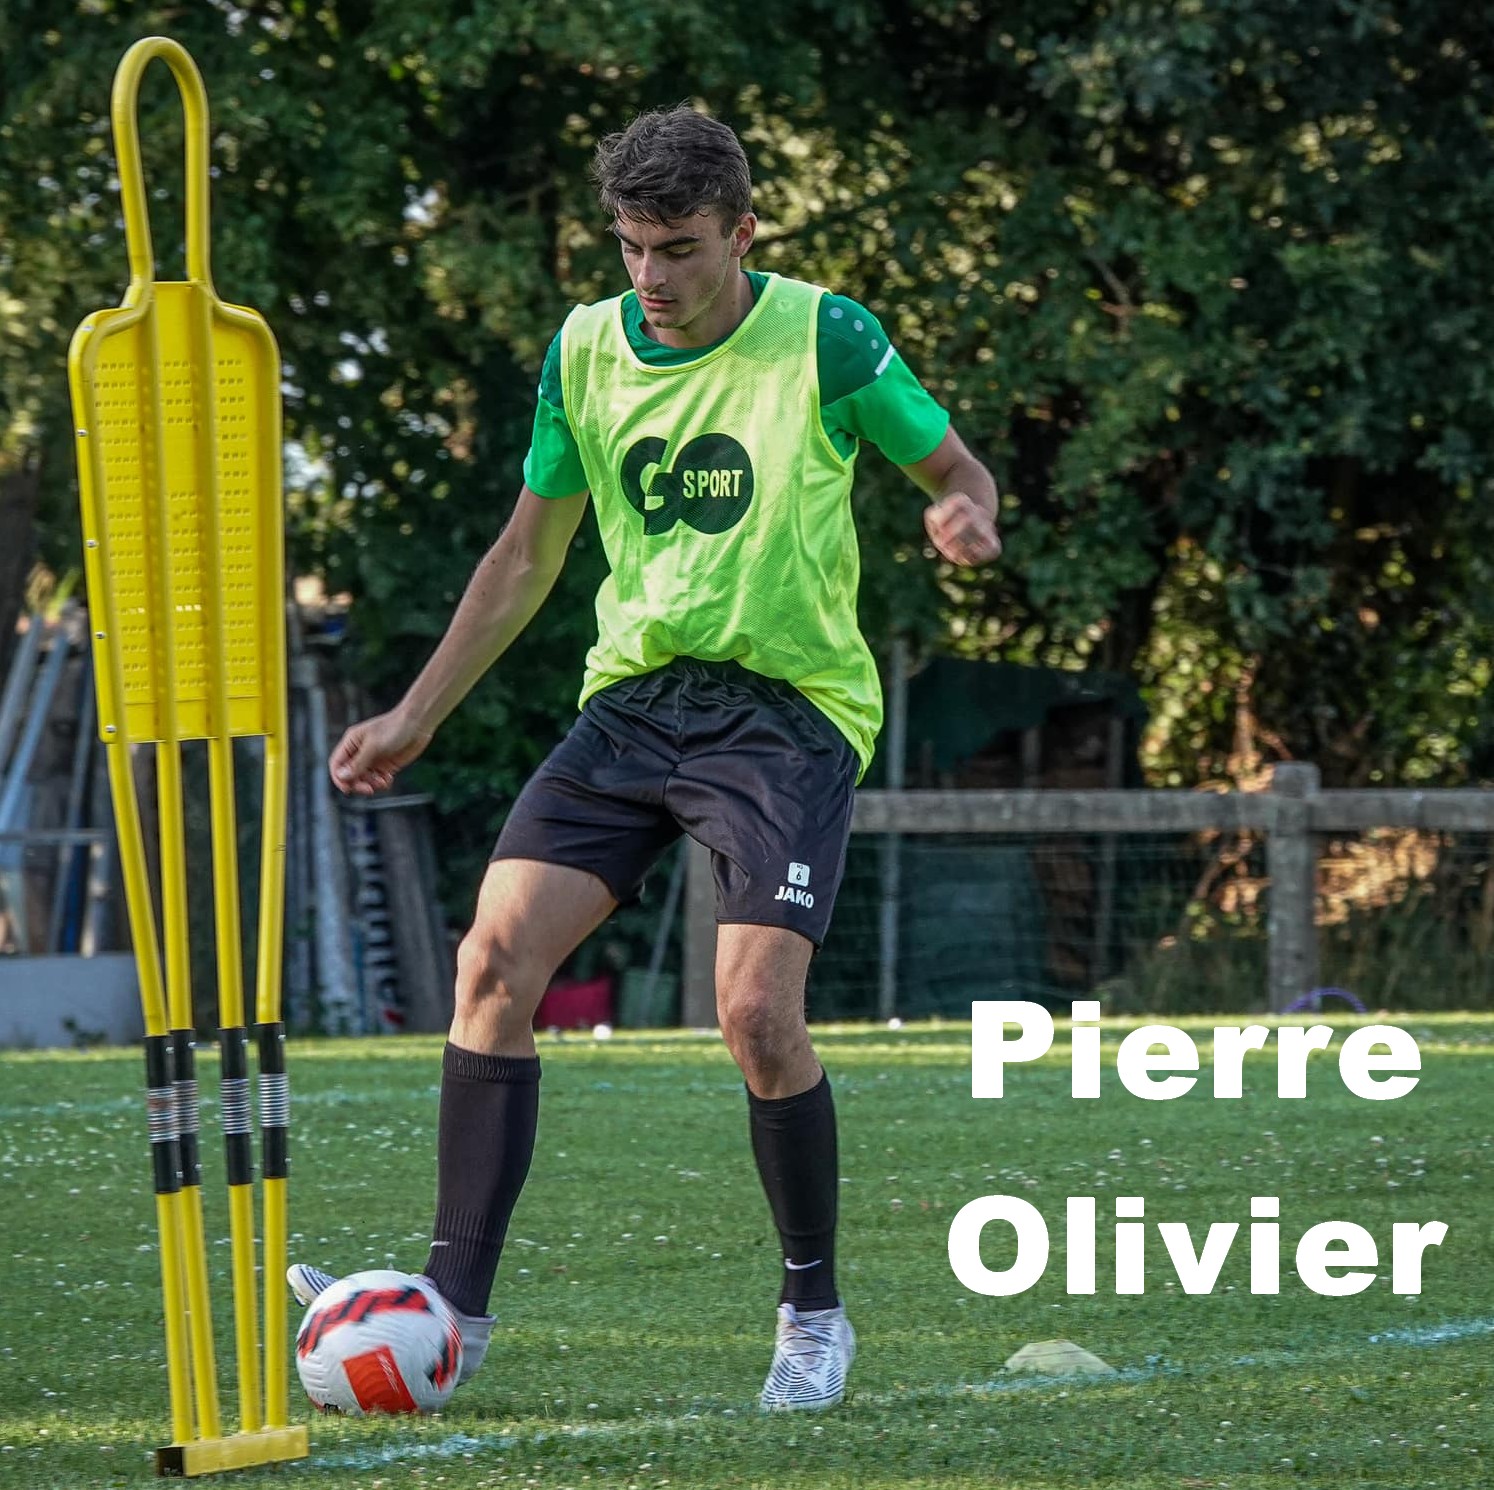 Pierre Olivier